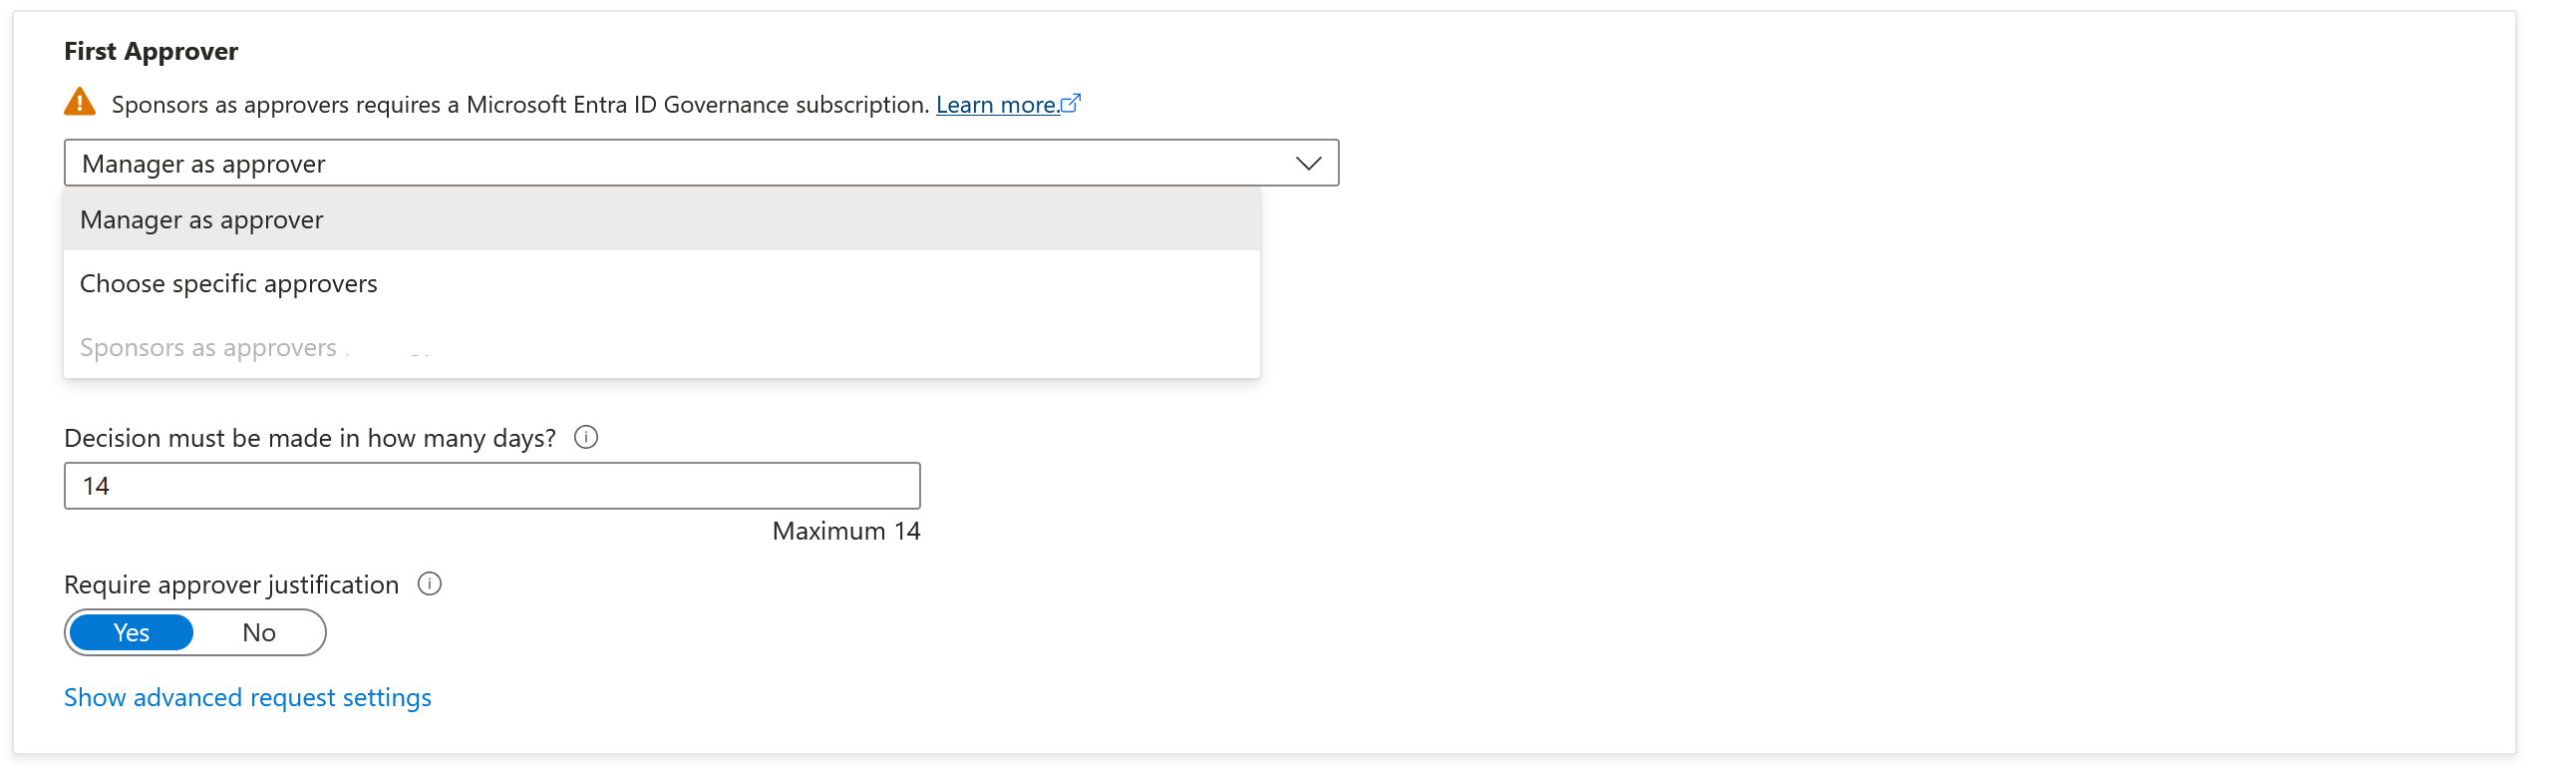 Captura de pantalla que muestra las opciones para un primer aprobador si la directiva se establece para los usuarios de su directorio.